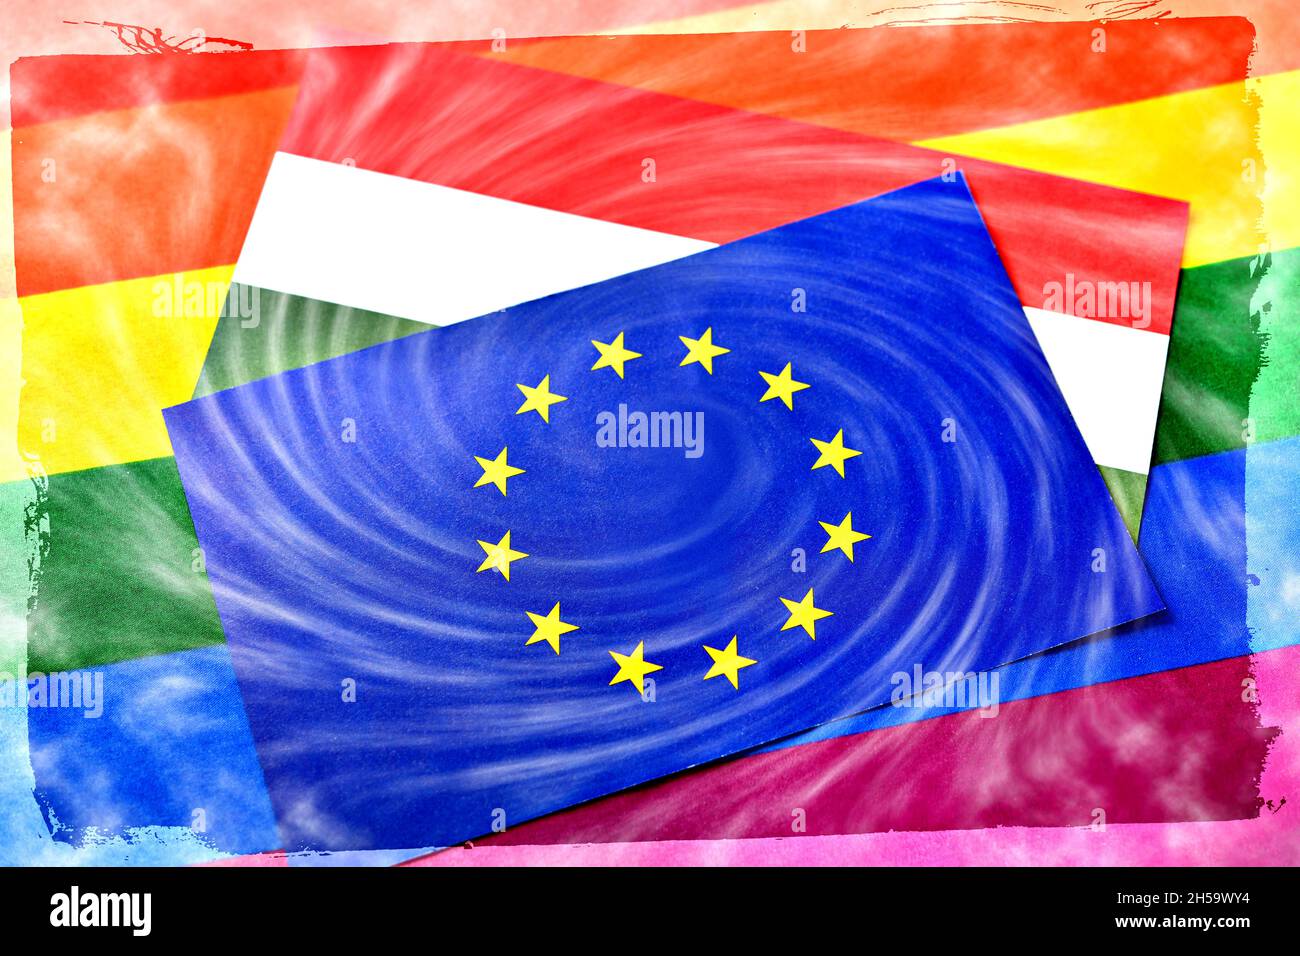 FOTOMONTAGE, Fahnen von EU und Ungarn mit Sturmwolken und Regenbogenfahne, Streit um ungarisches LGBTQ-Gesetz Foto de stock